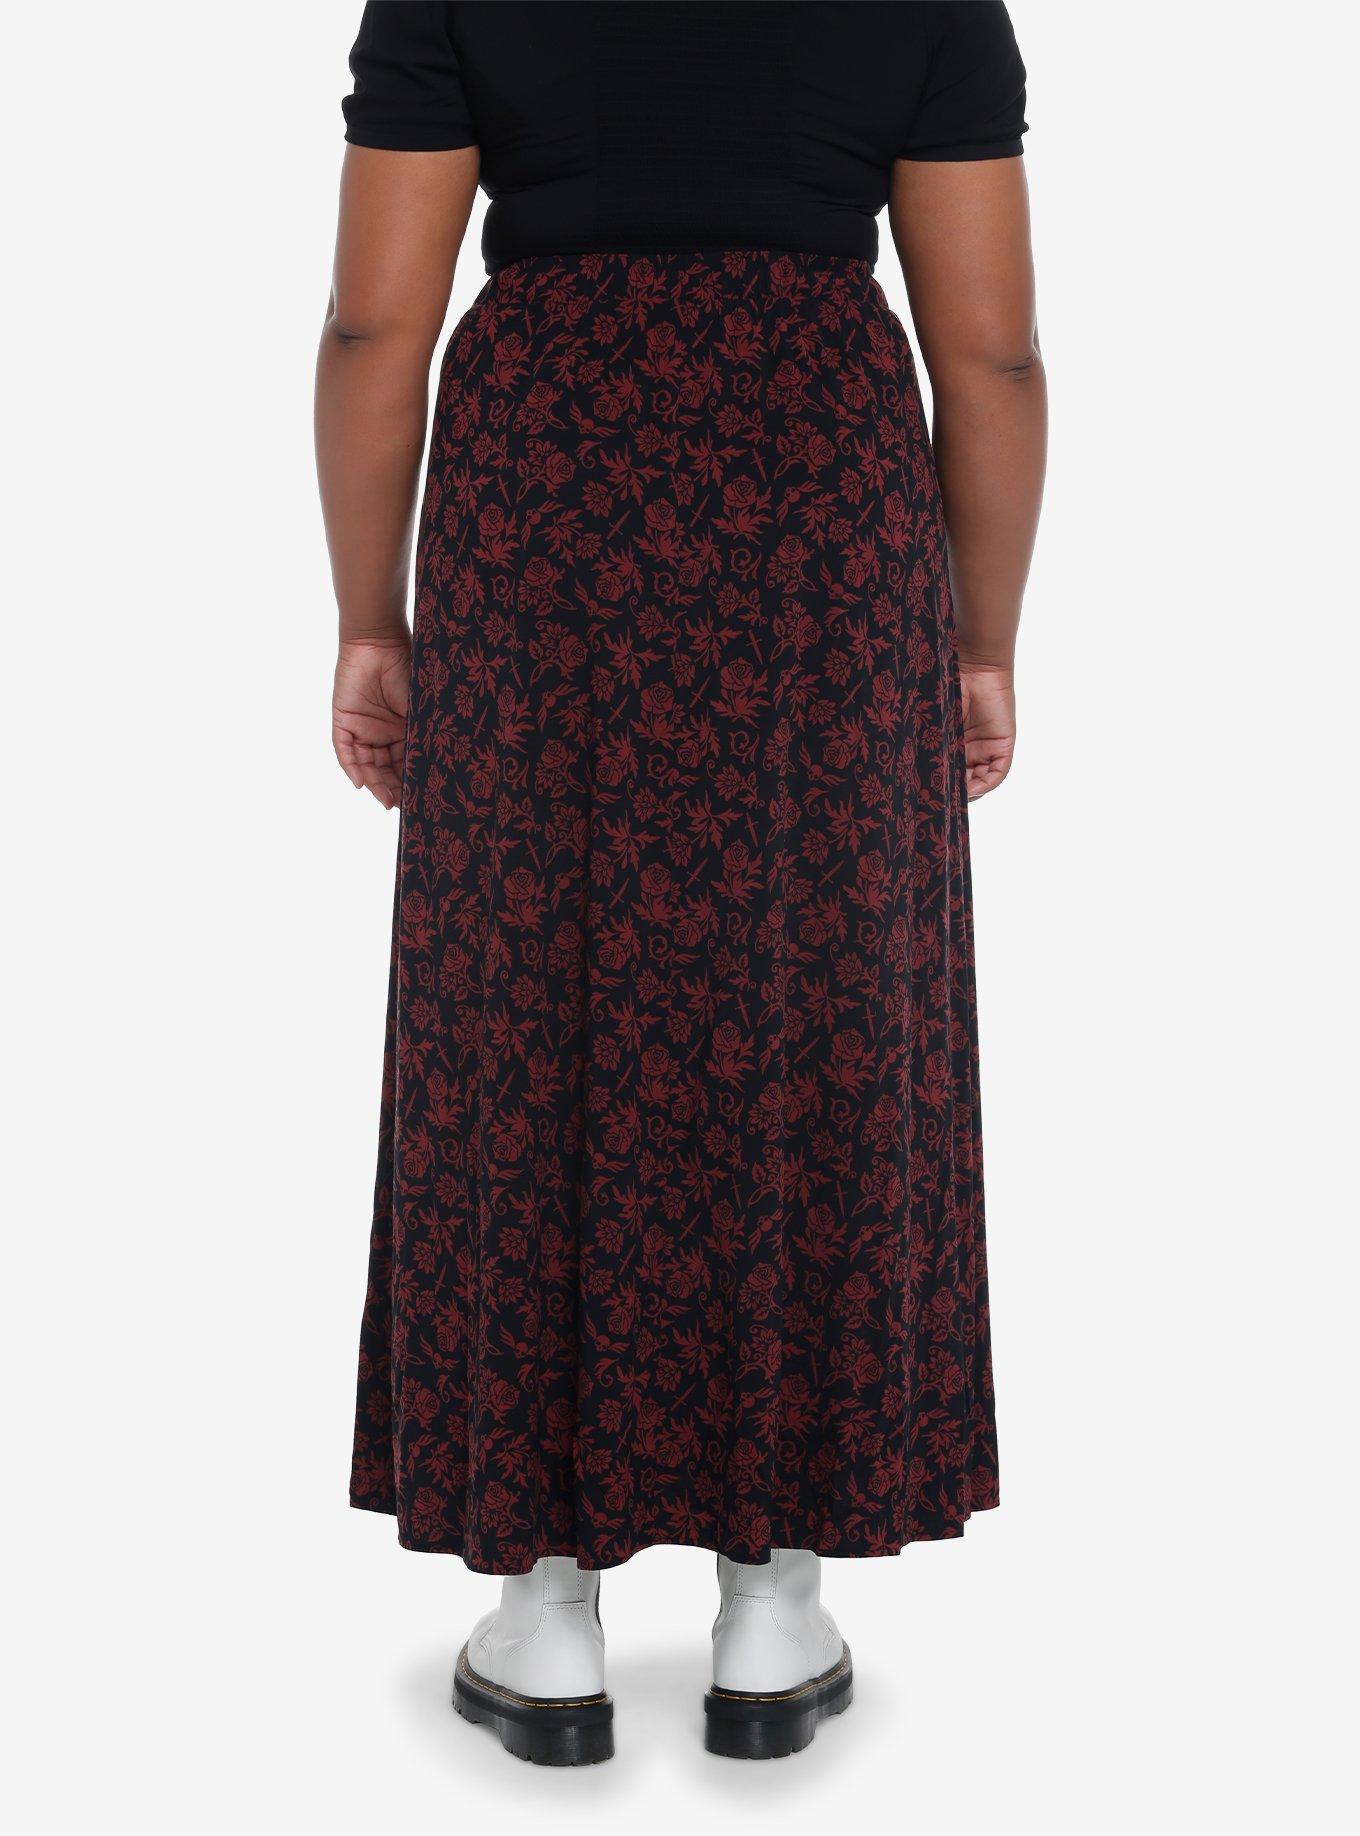 Black & Red Floral Skull Maxi Skirt Plus Size, MODERN SWING, alternate